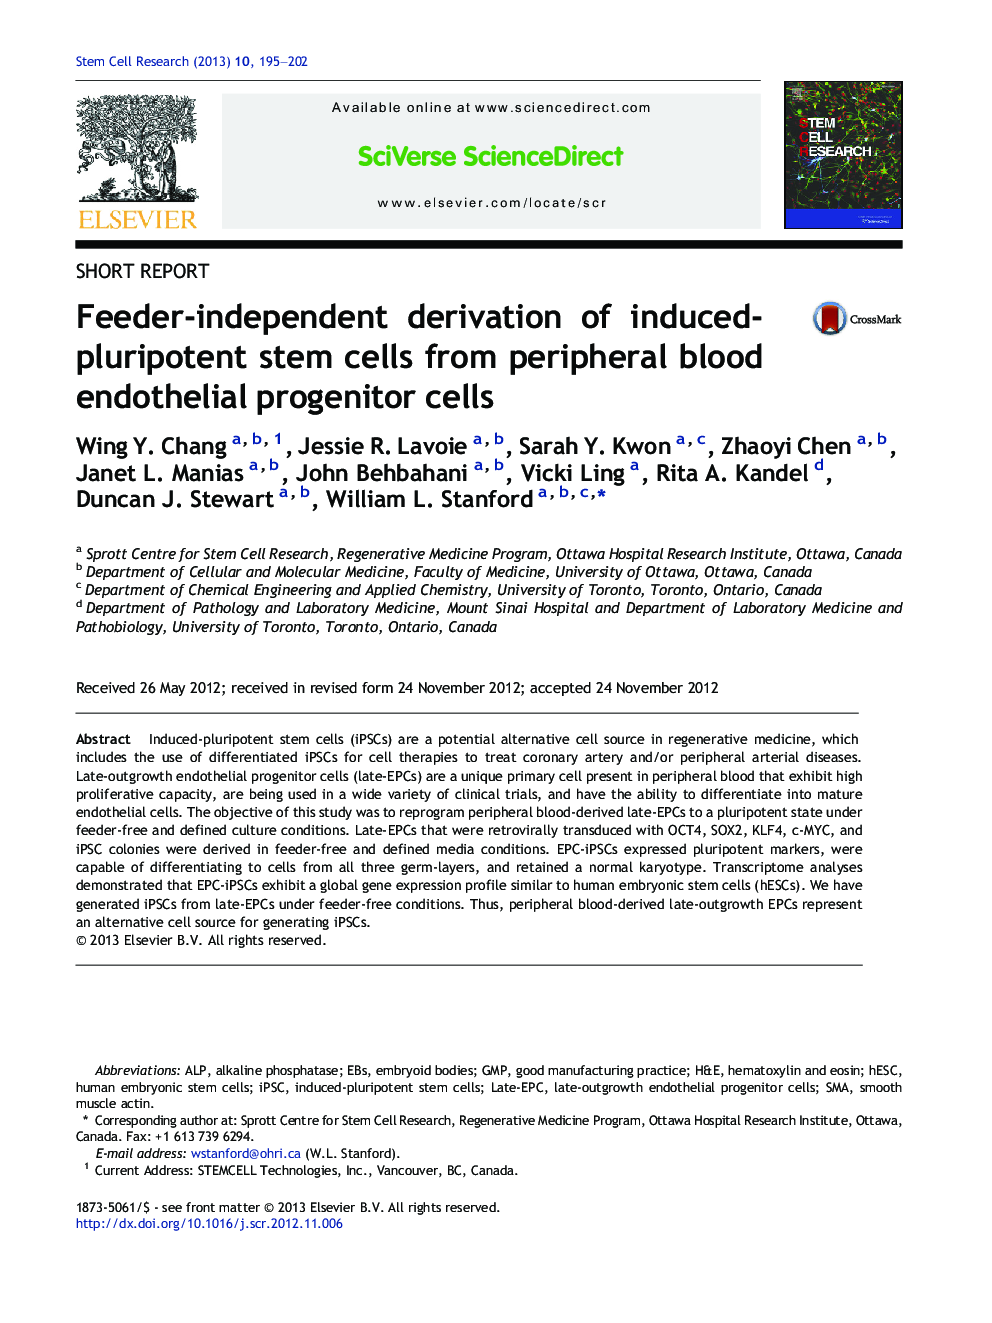 جداسازی مستقل فیدر سلول های بنیادی القا شده با پلورپوفتون از سلول های پیش گیاه اندوتلیال خون محیطی 